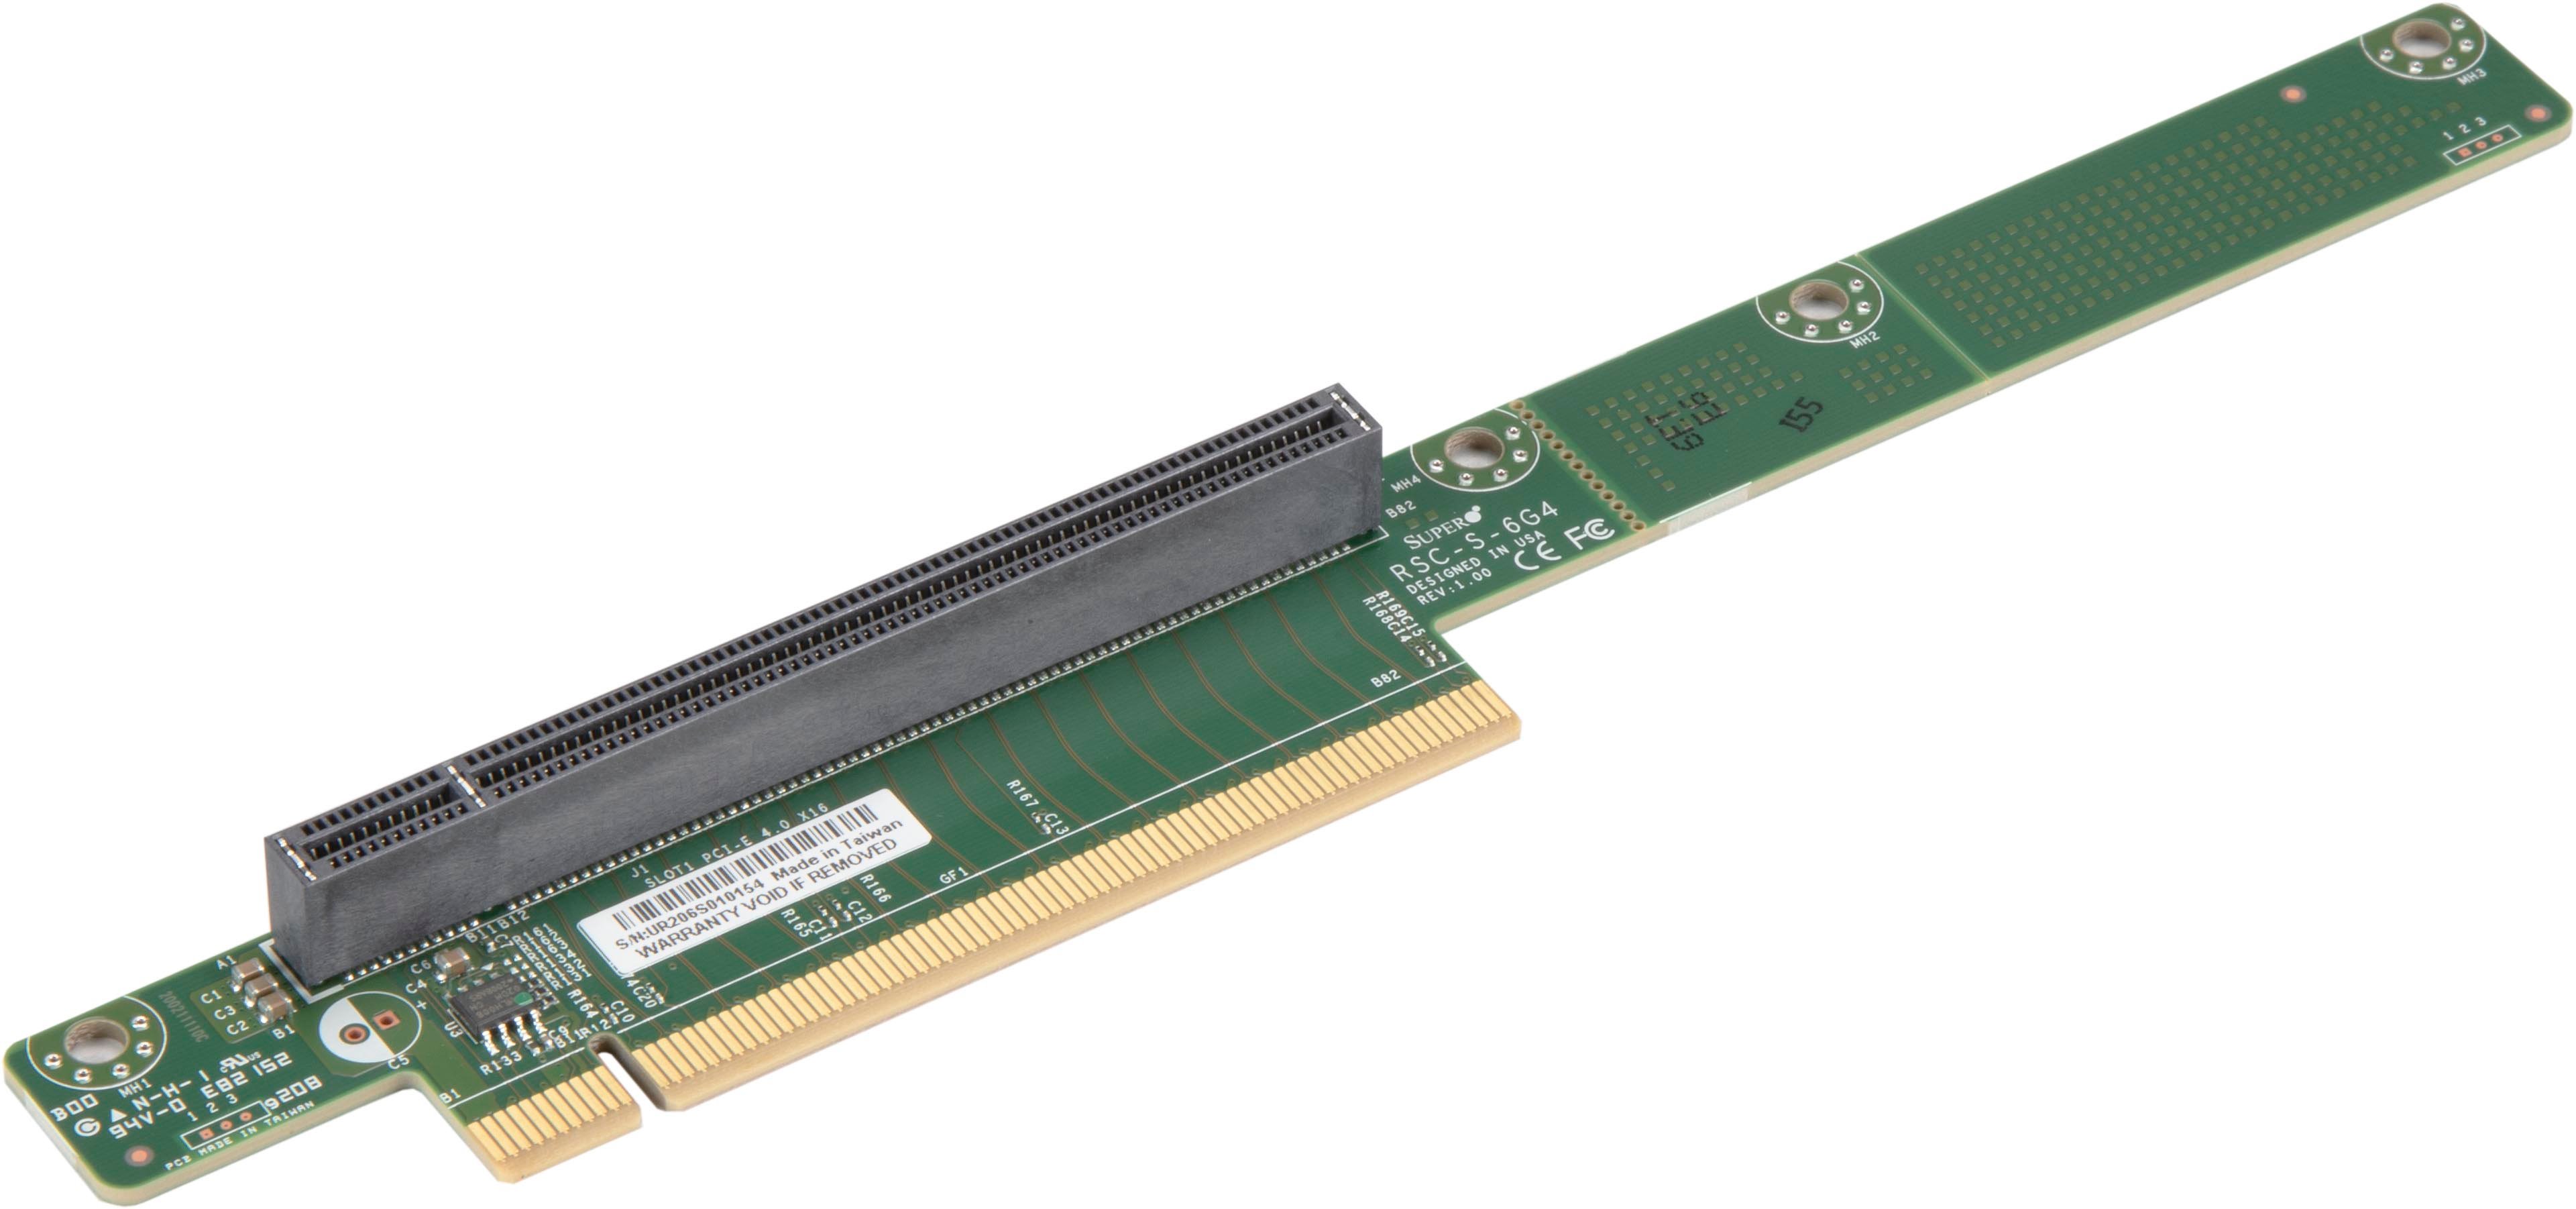 SUPERMICRO riser card 1U PCI-E x16 G4